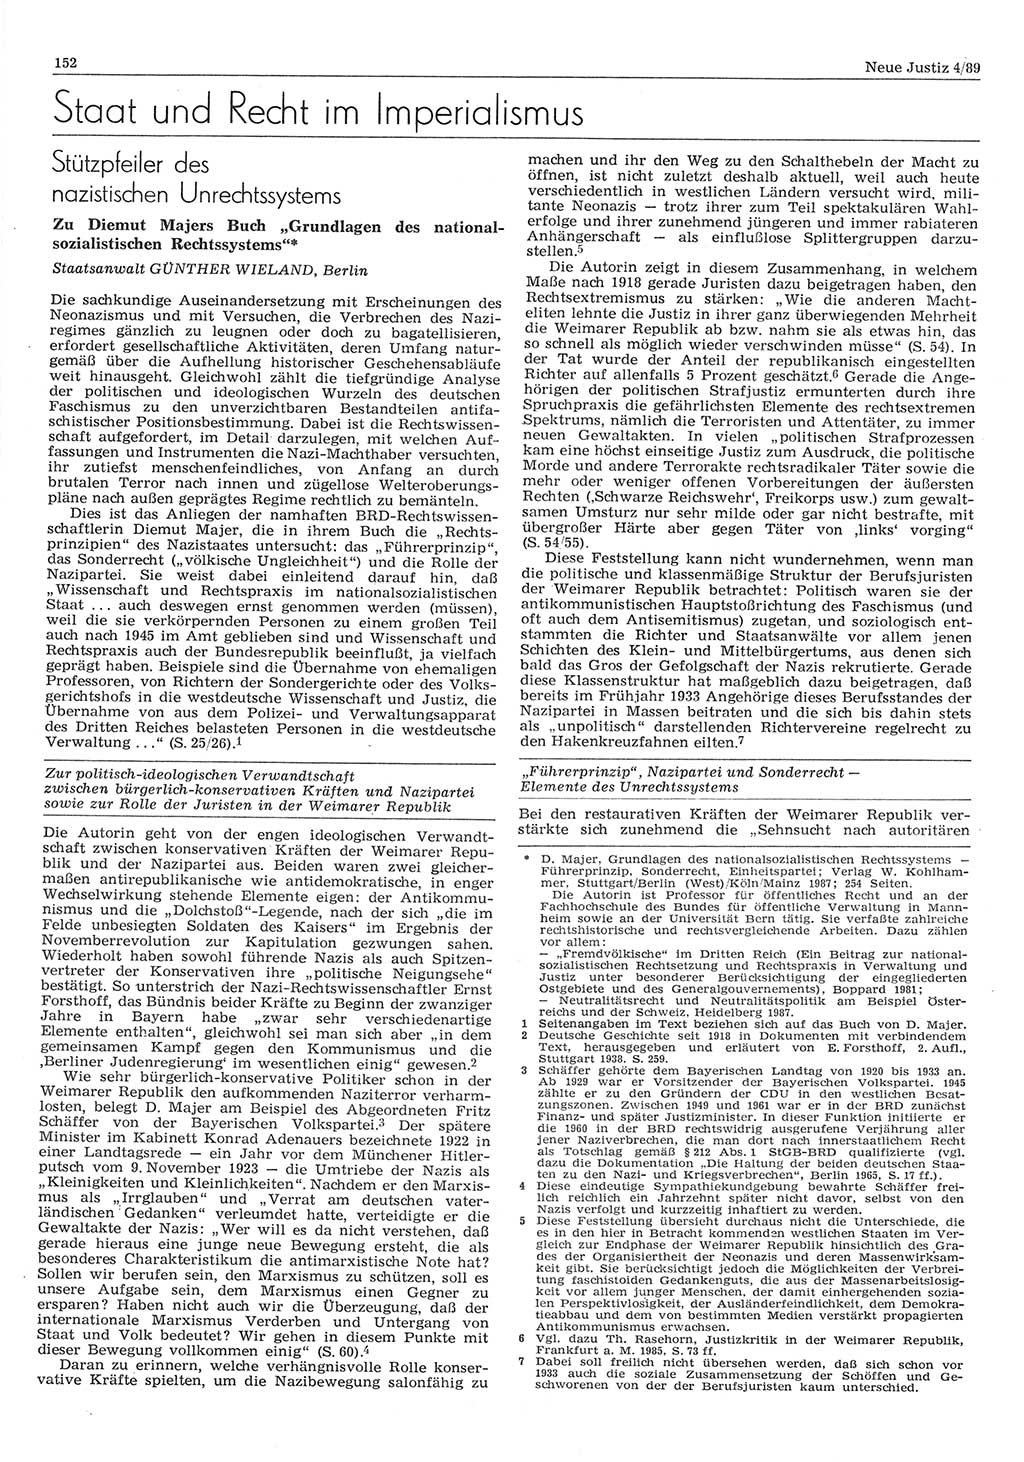 Neue Justiz (NJ), Zeitschrift für sozialistisches Recht und Gesetzlichkeit [Deutsche Demokratische Republik (DDR)], 43. Jahrgang 1989, Seite 152 (NJ DDR 1989, S. 152)